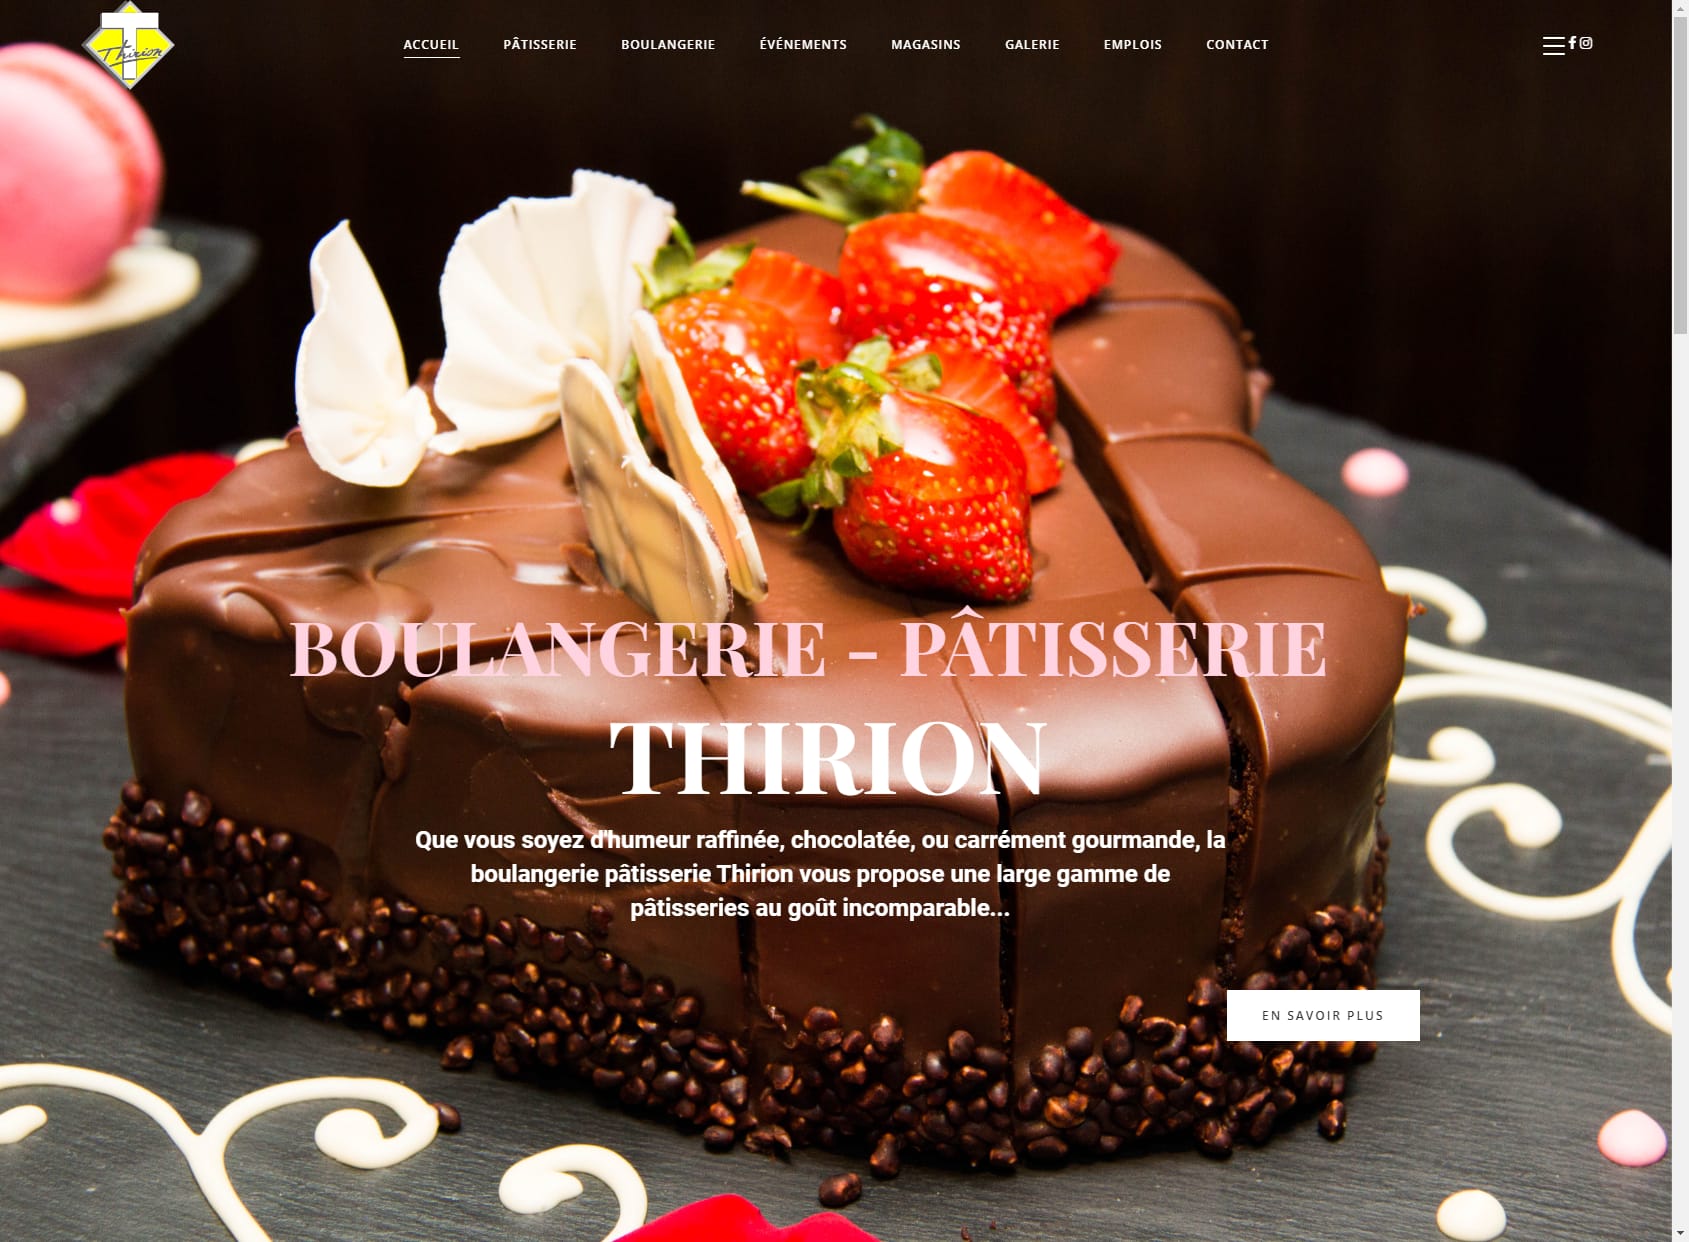 Boulangerie-pâtisserie Thirion - La Louvière